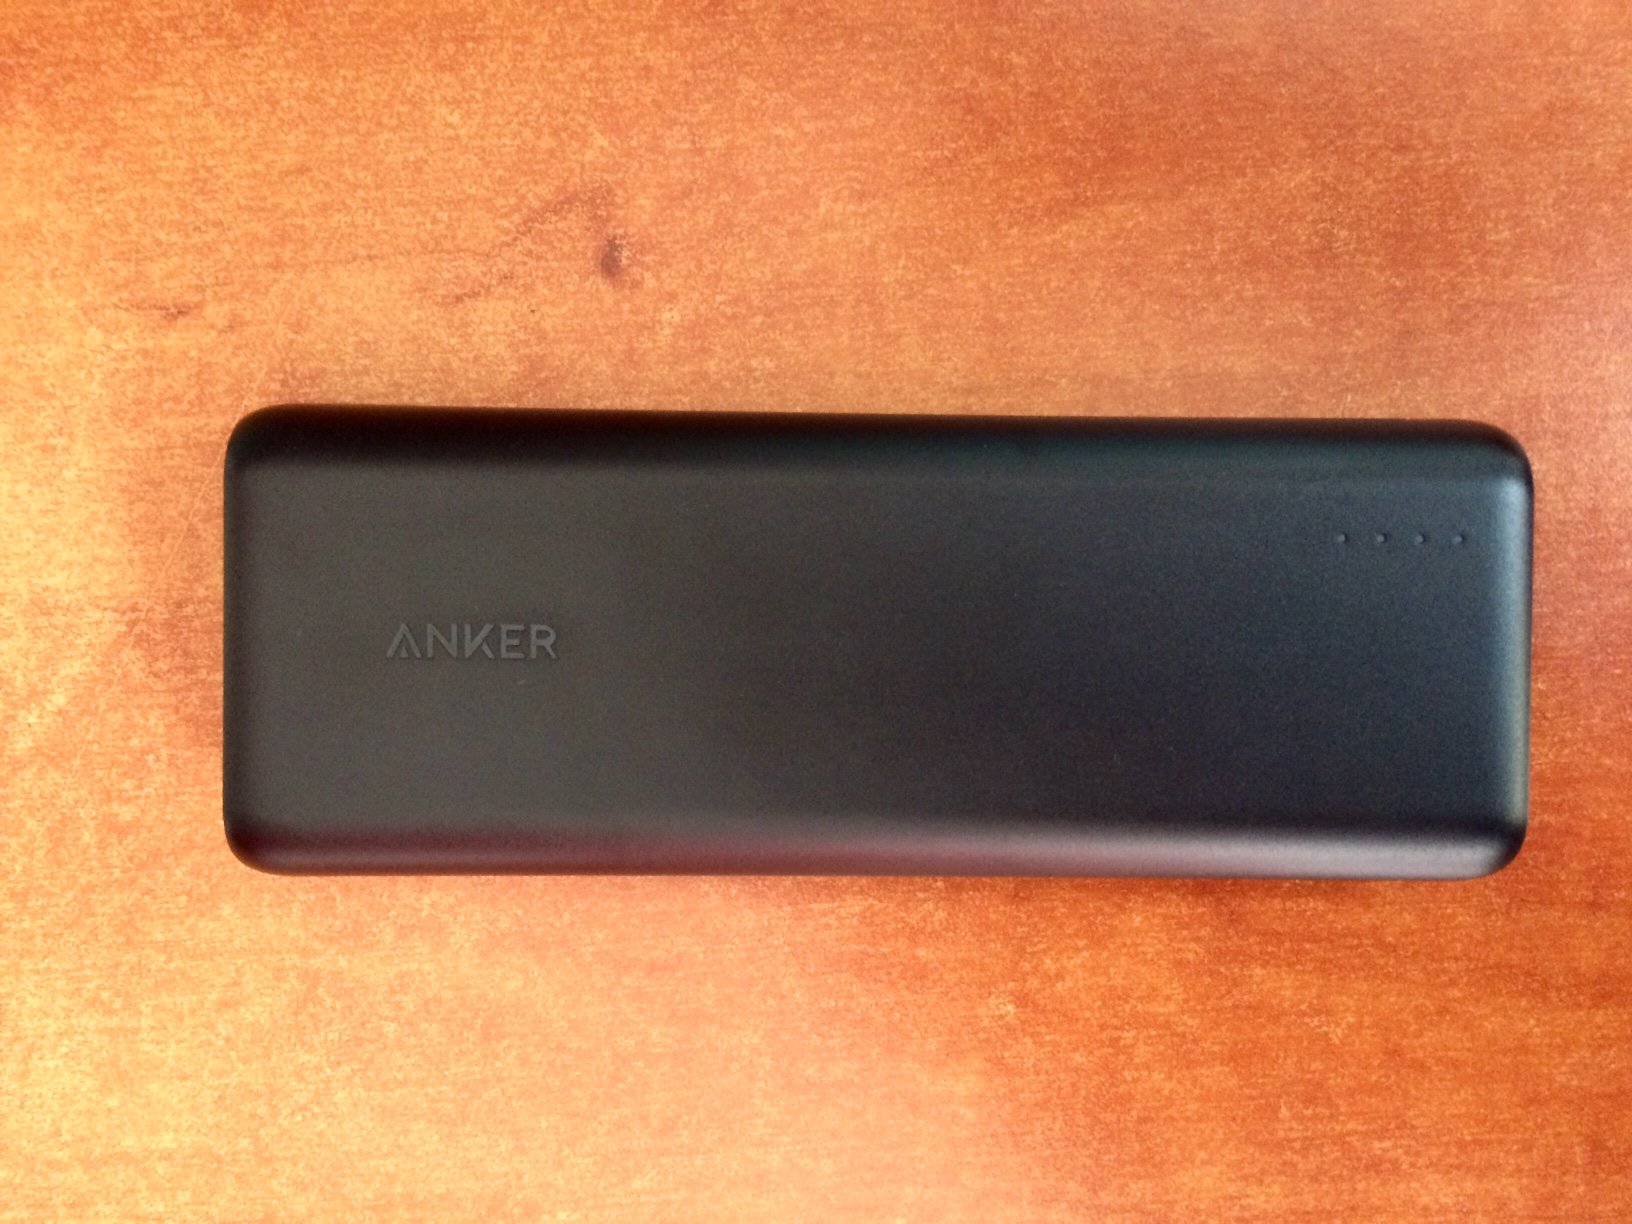 Bon plan : -30% sur la batterie externe Anker 20100 mAh